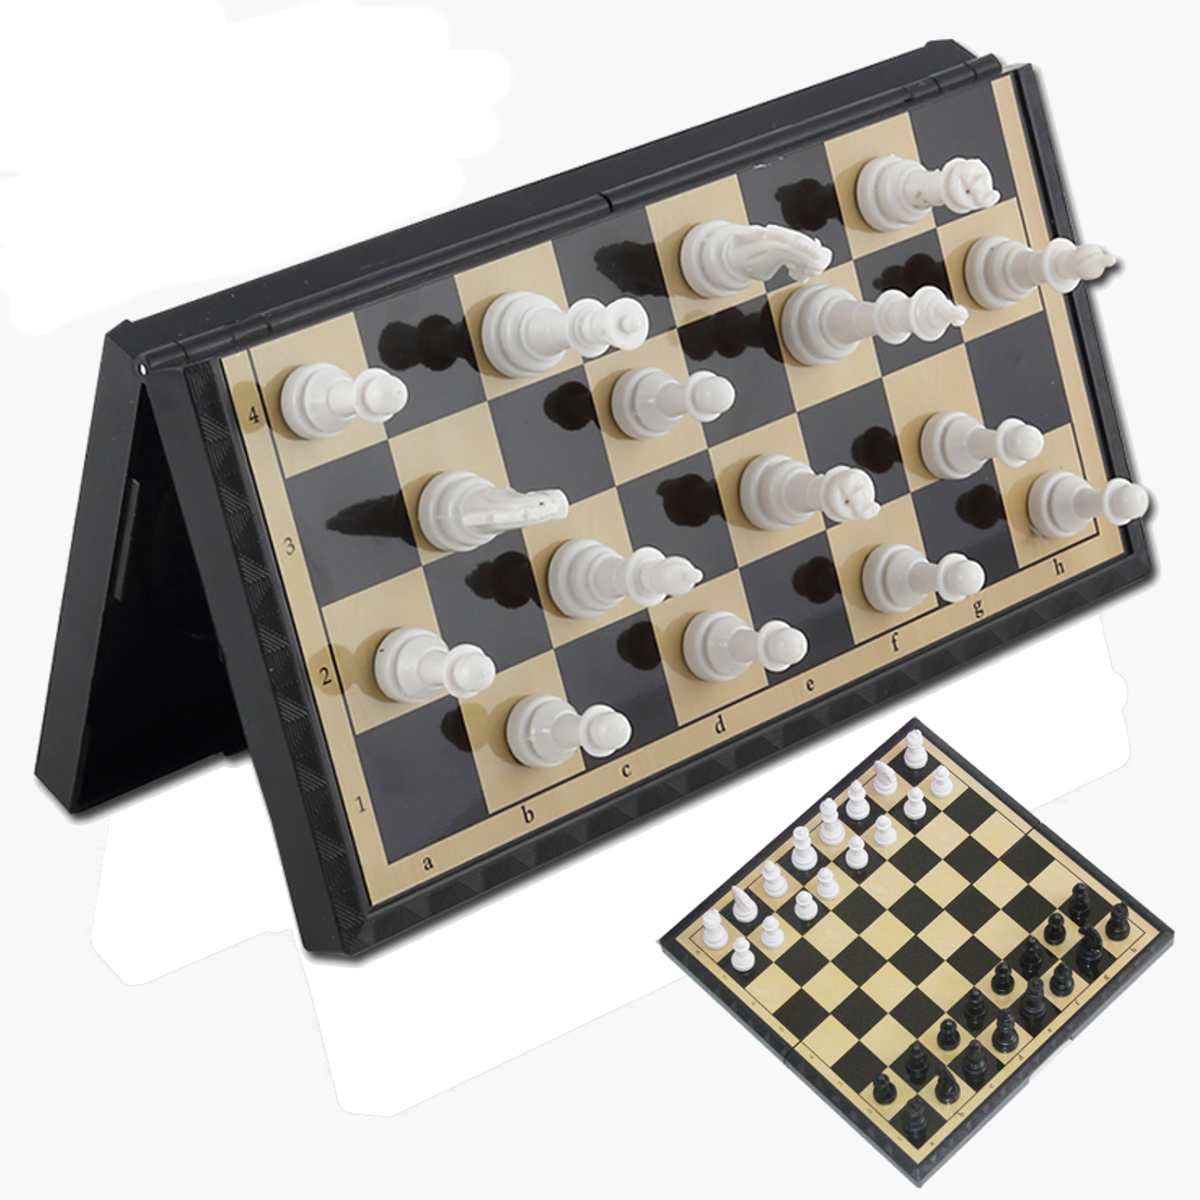 Magnetschach Reise Zusammenfaltbares Brettspiel Tragbares Geschenk Spiel K7U8 